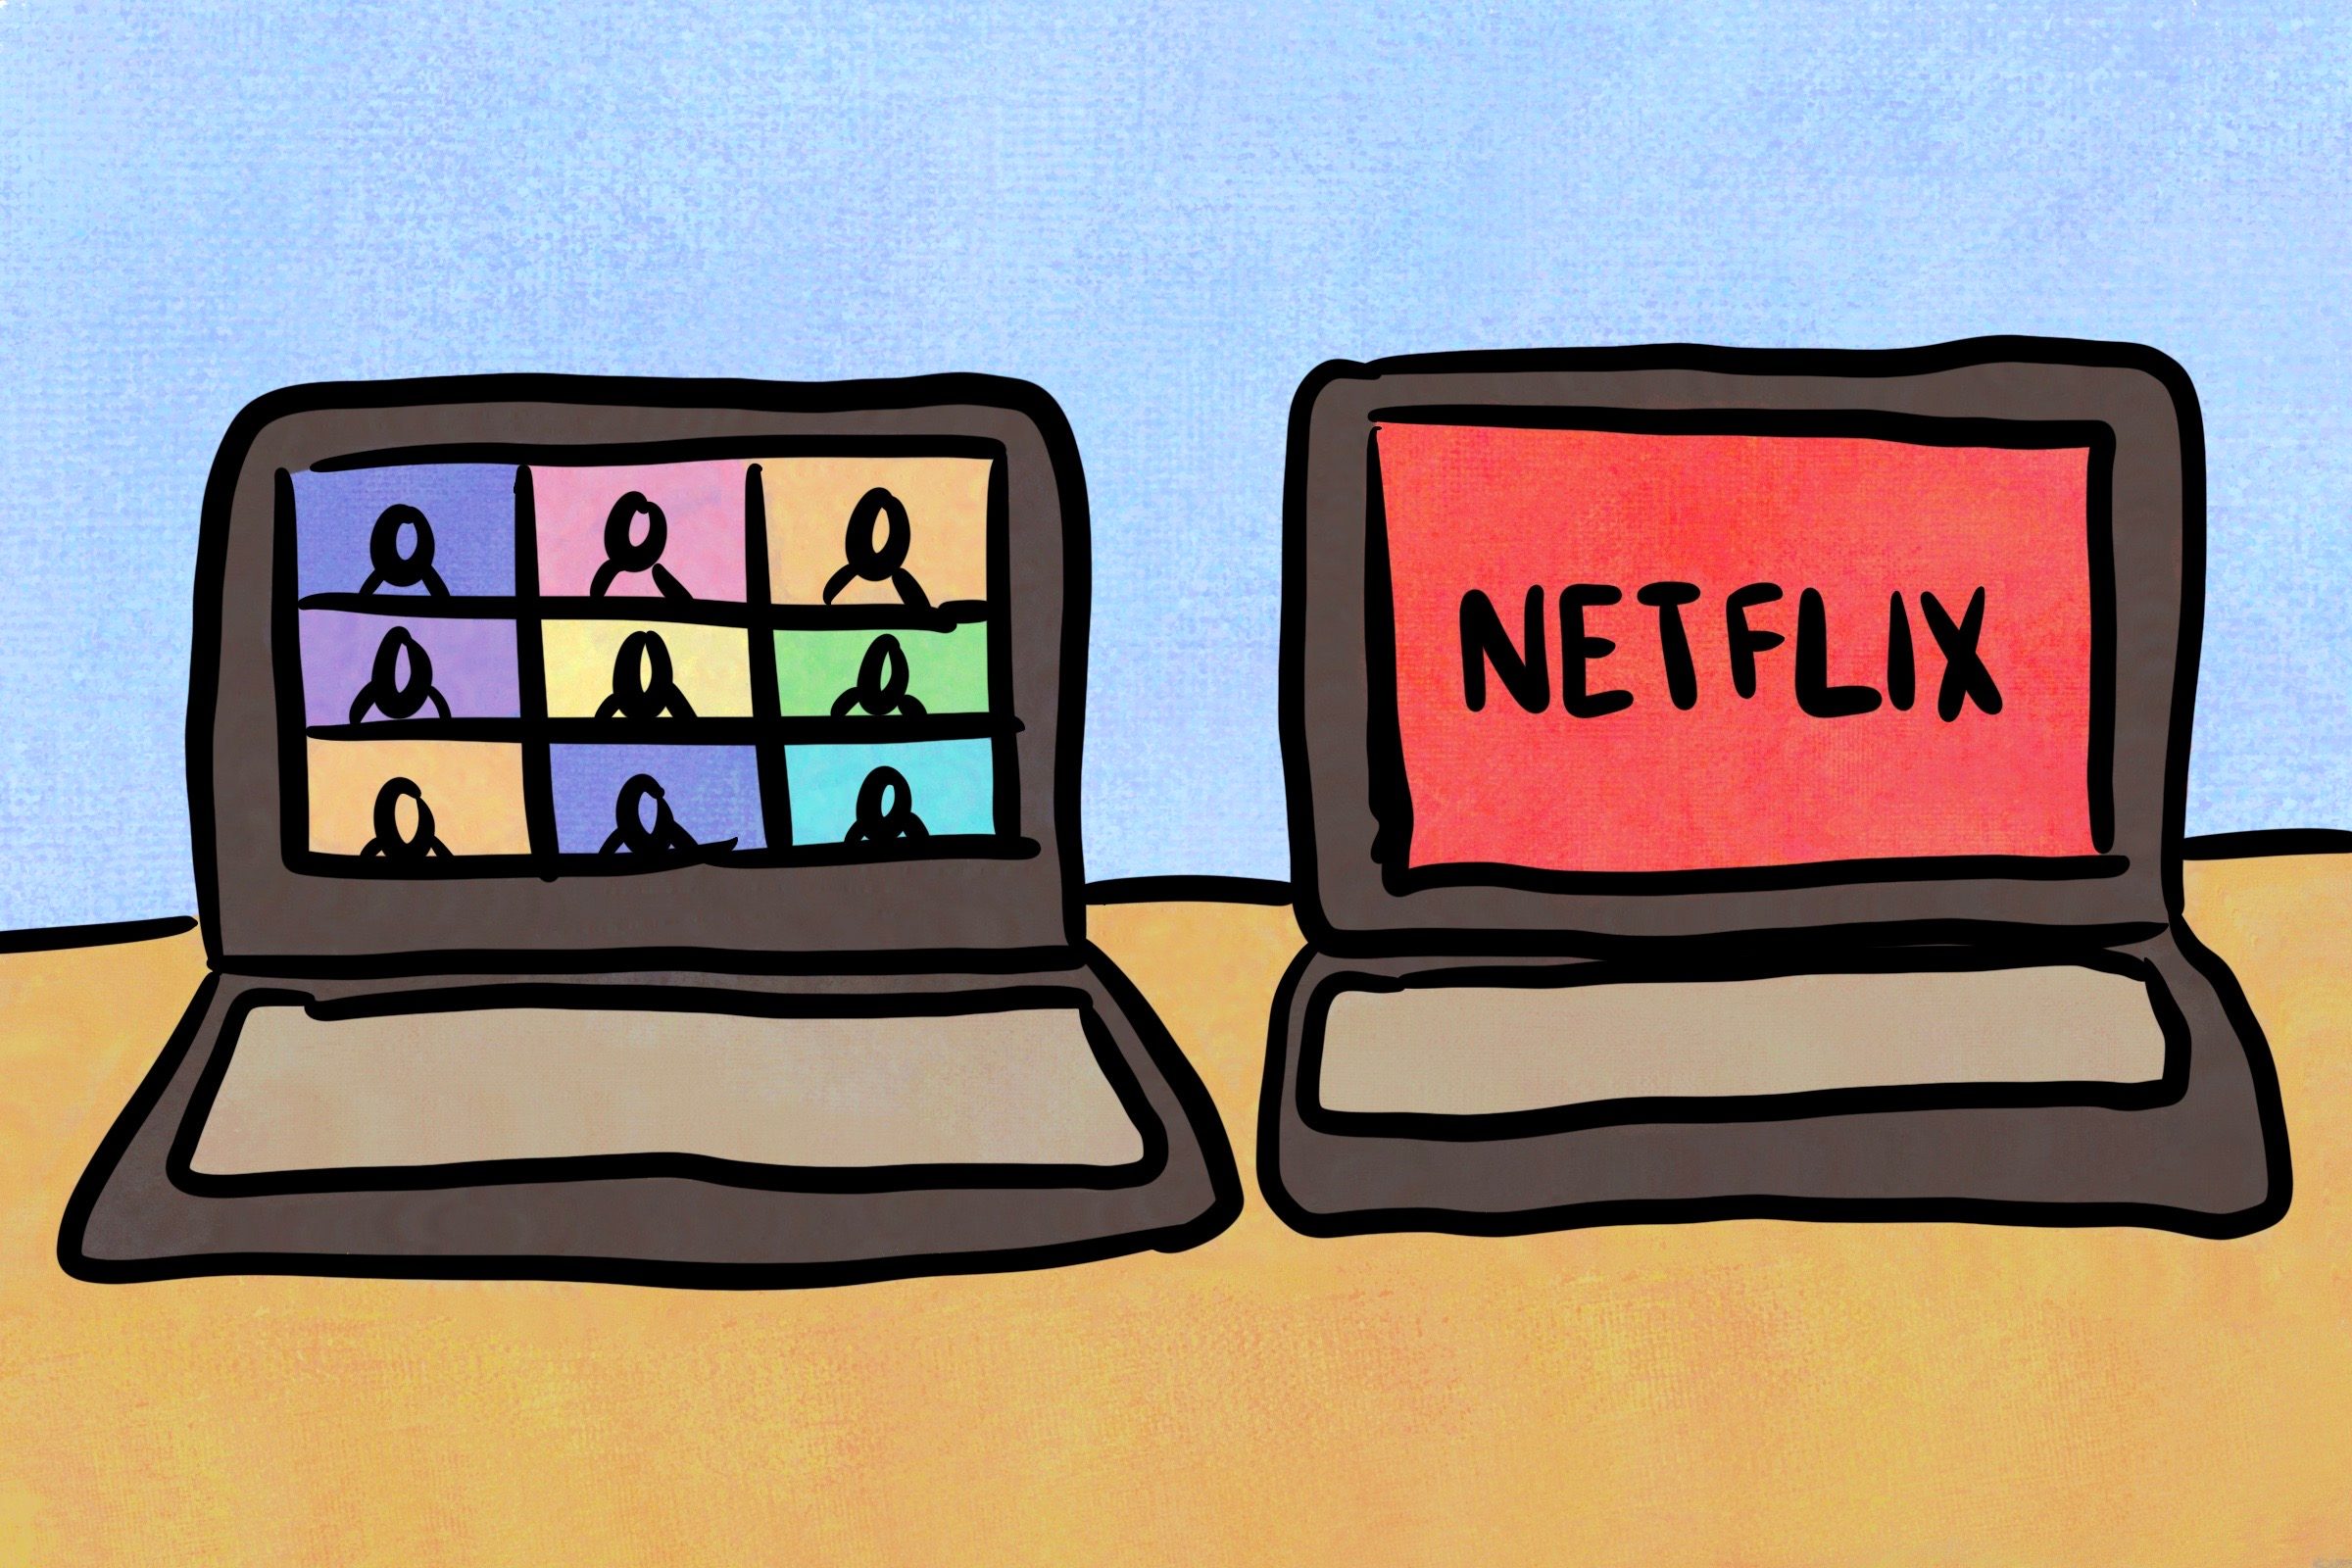 دو صفحه در کنار هم: Netflix و زوم تماس